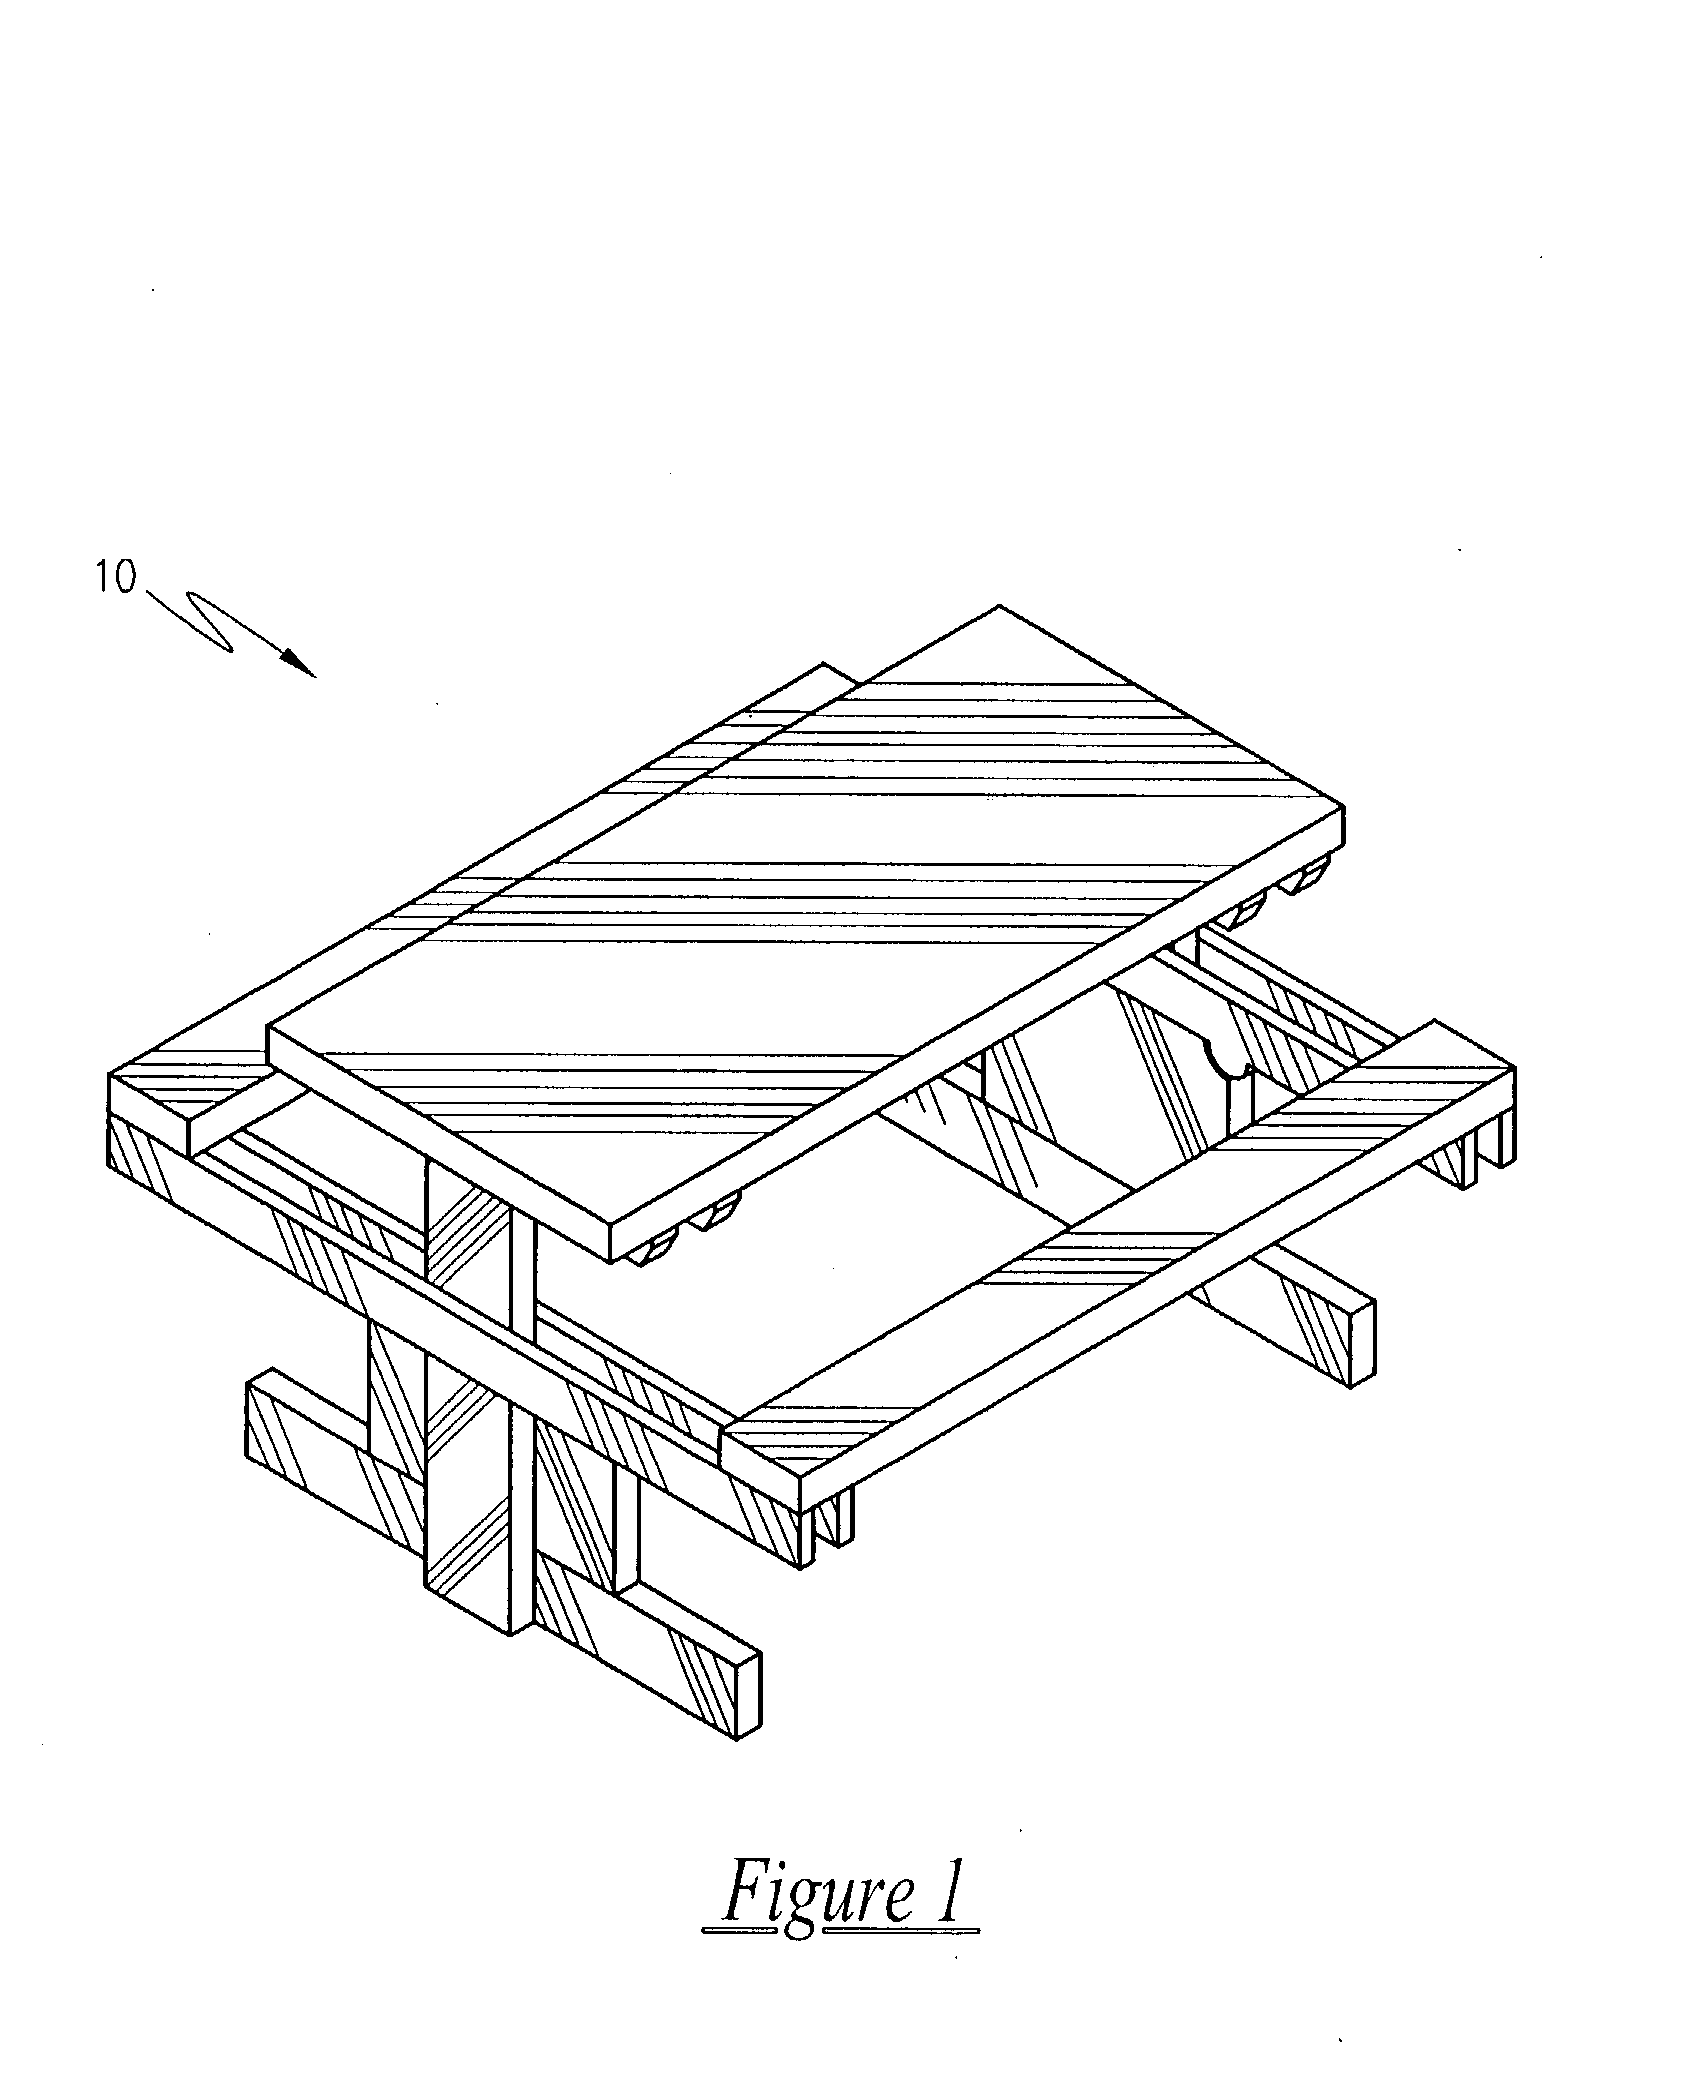 Modular picnic table